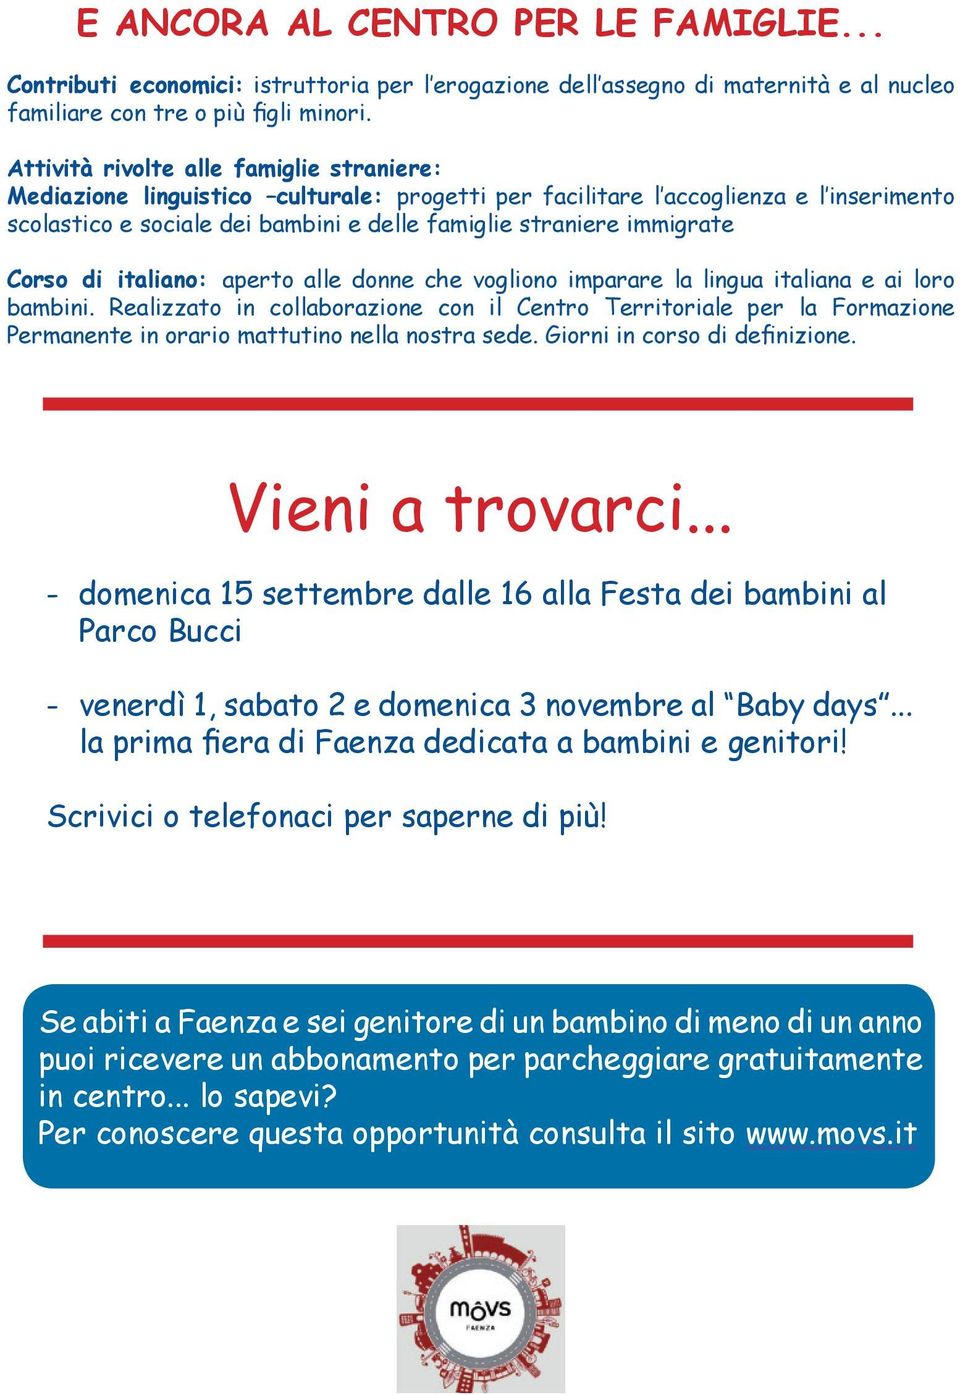 Corso di italiano: aperto alle donne che vogliono imparare la lingua italiana e ai loro bambini.